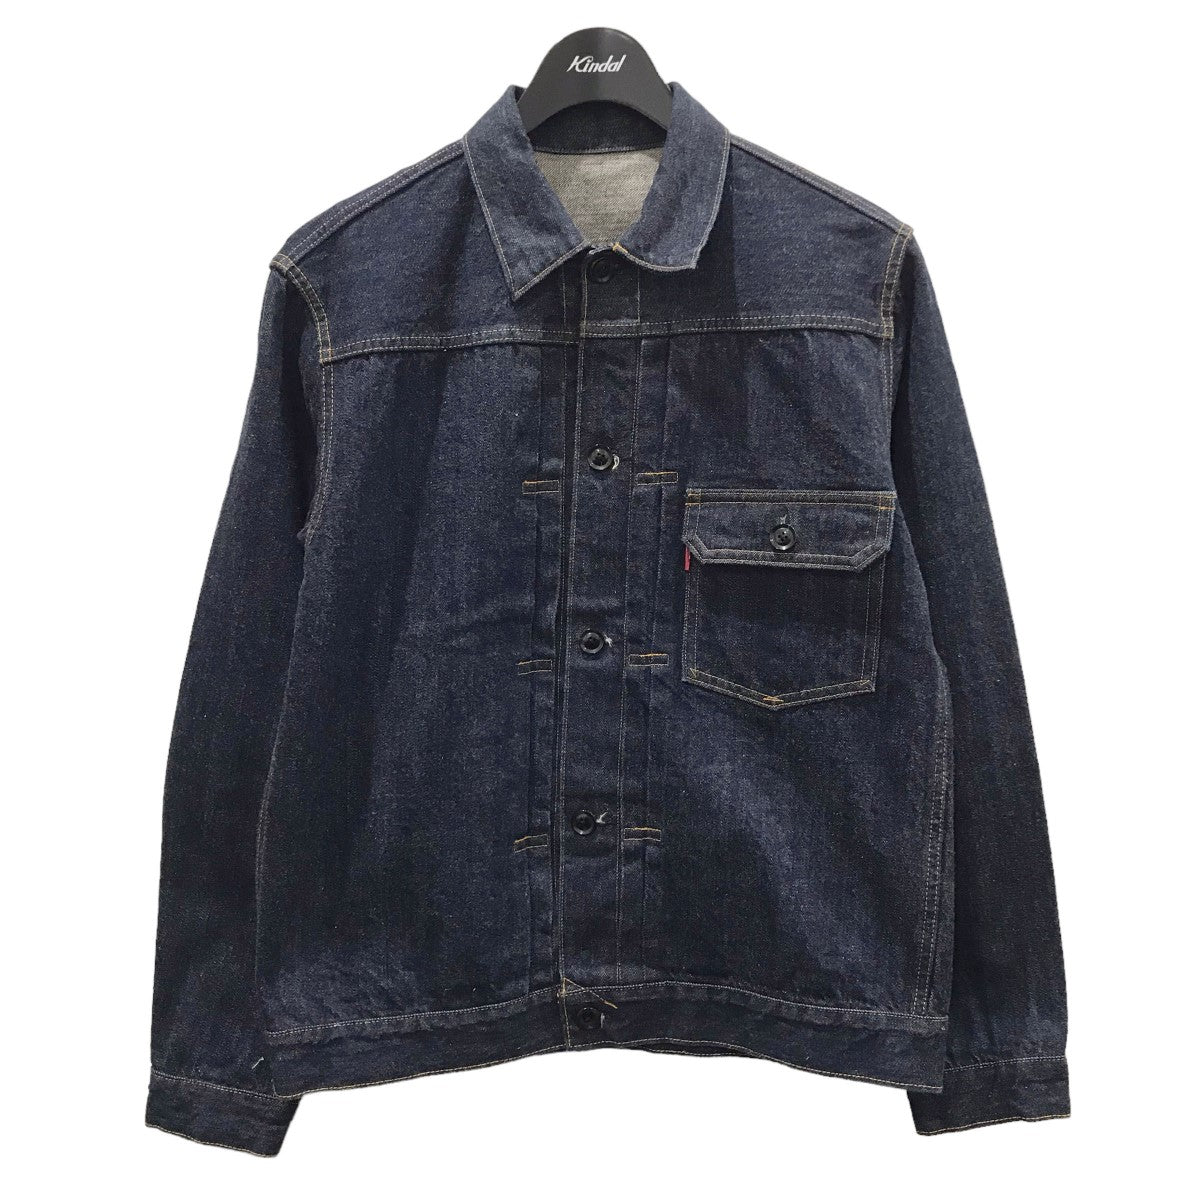 9,840円cantate T-back denim jacket 1st 44